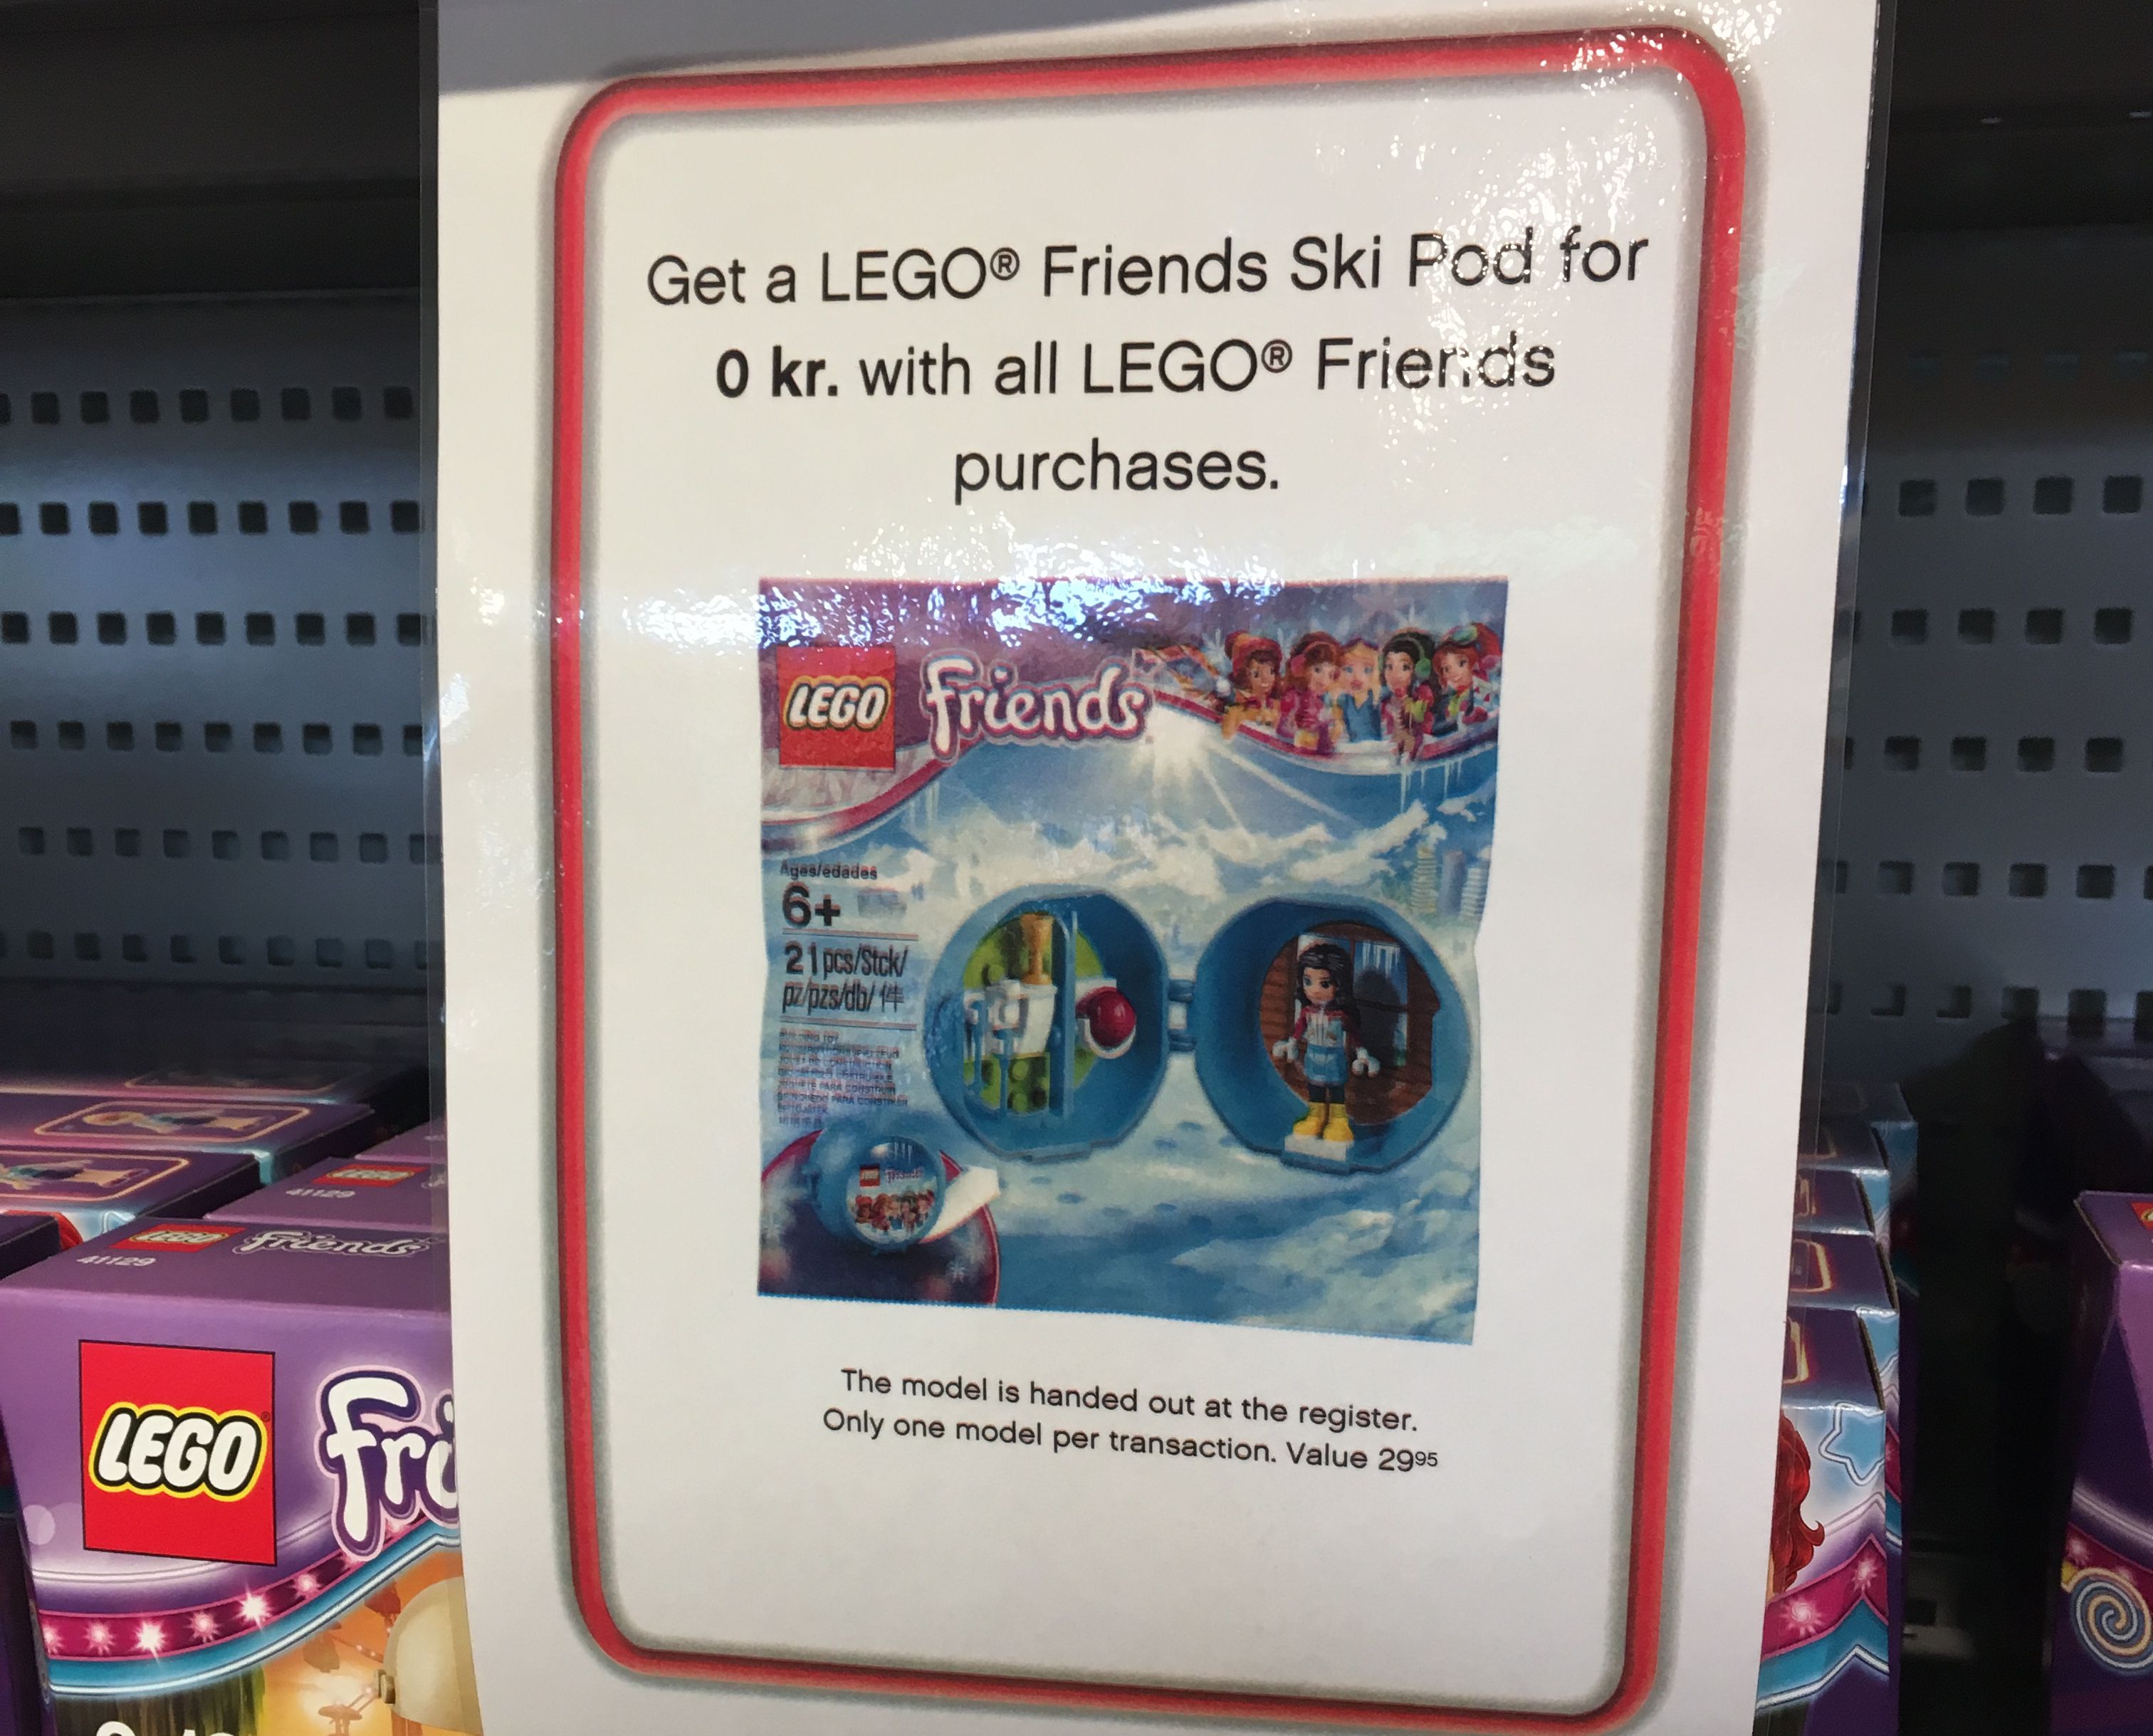 LEGOLAND Billund: Diese Gratis-Zugabe gibt es derzeit im LEGO Shop